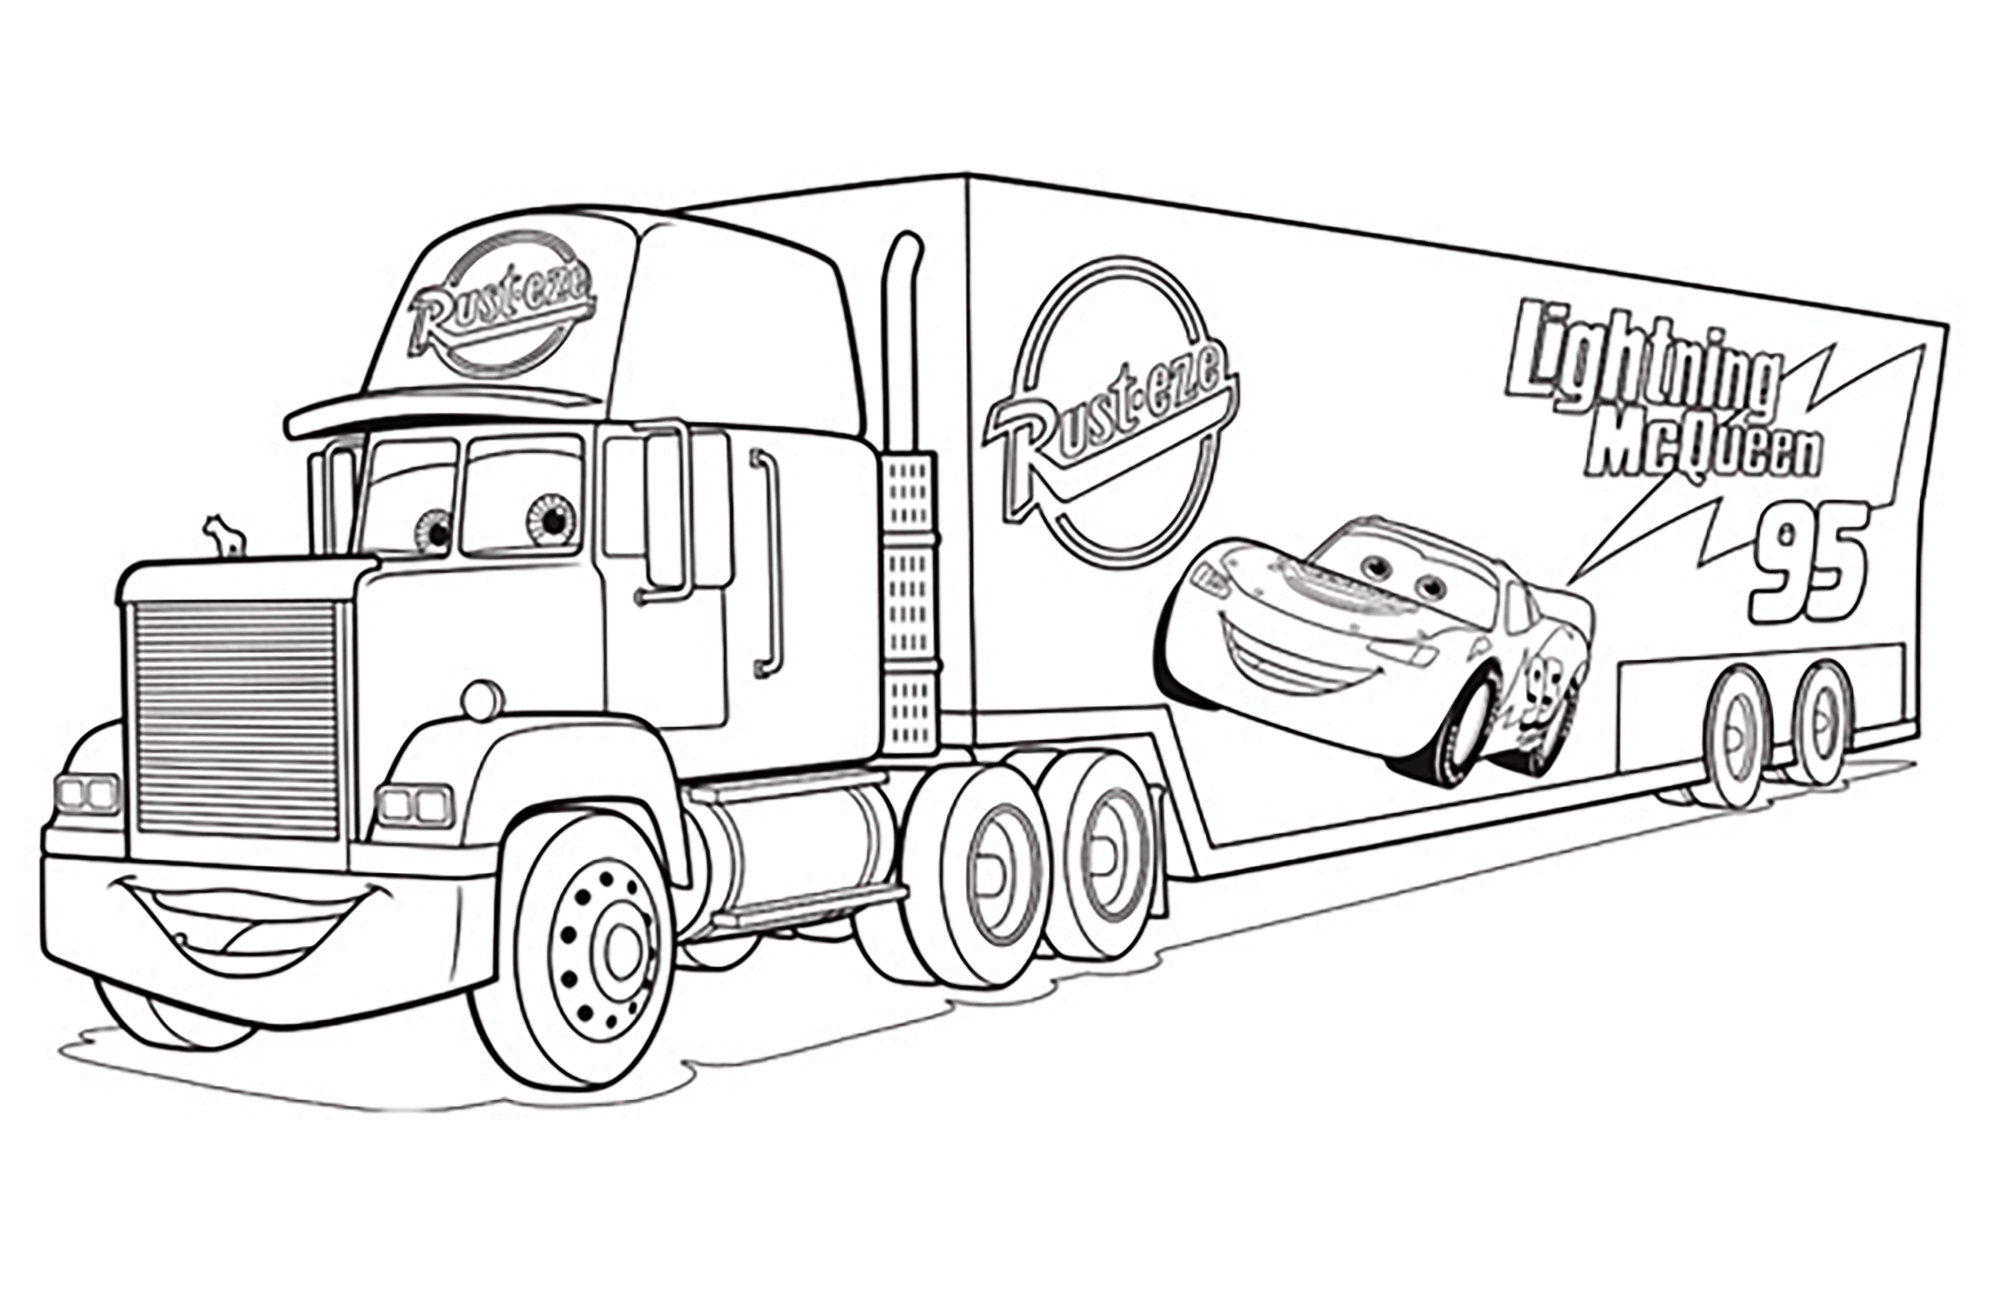 Joli coloriage de Cars 3 simple pour enfants : Mack Truck